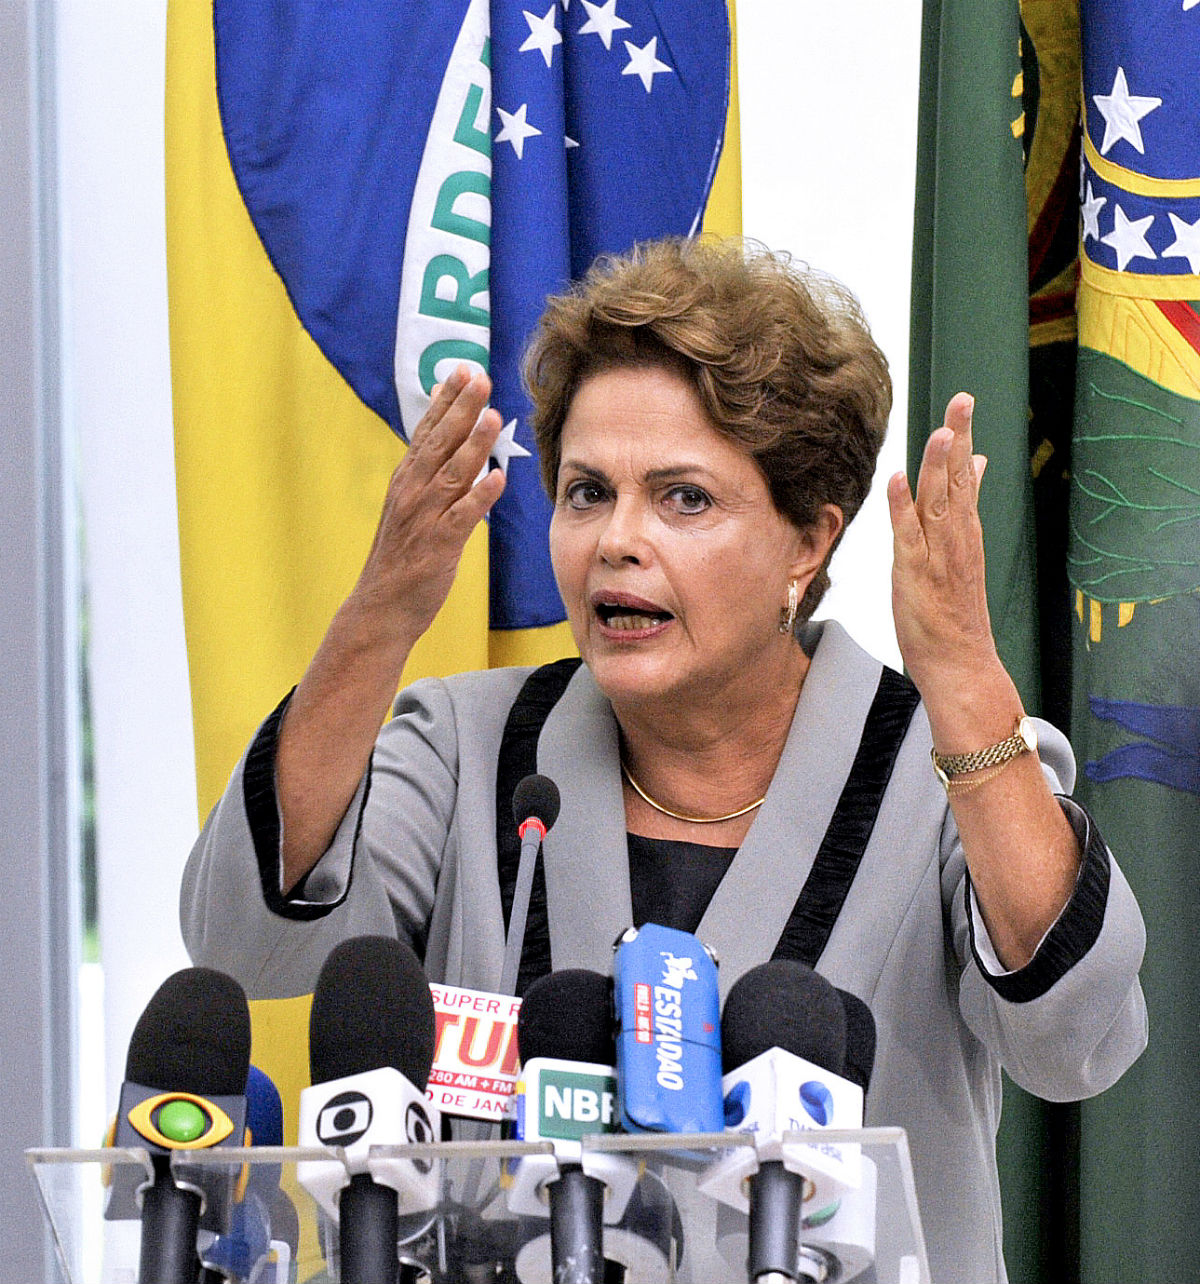 Framgång vändes till nederlag för Rousseff